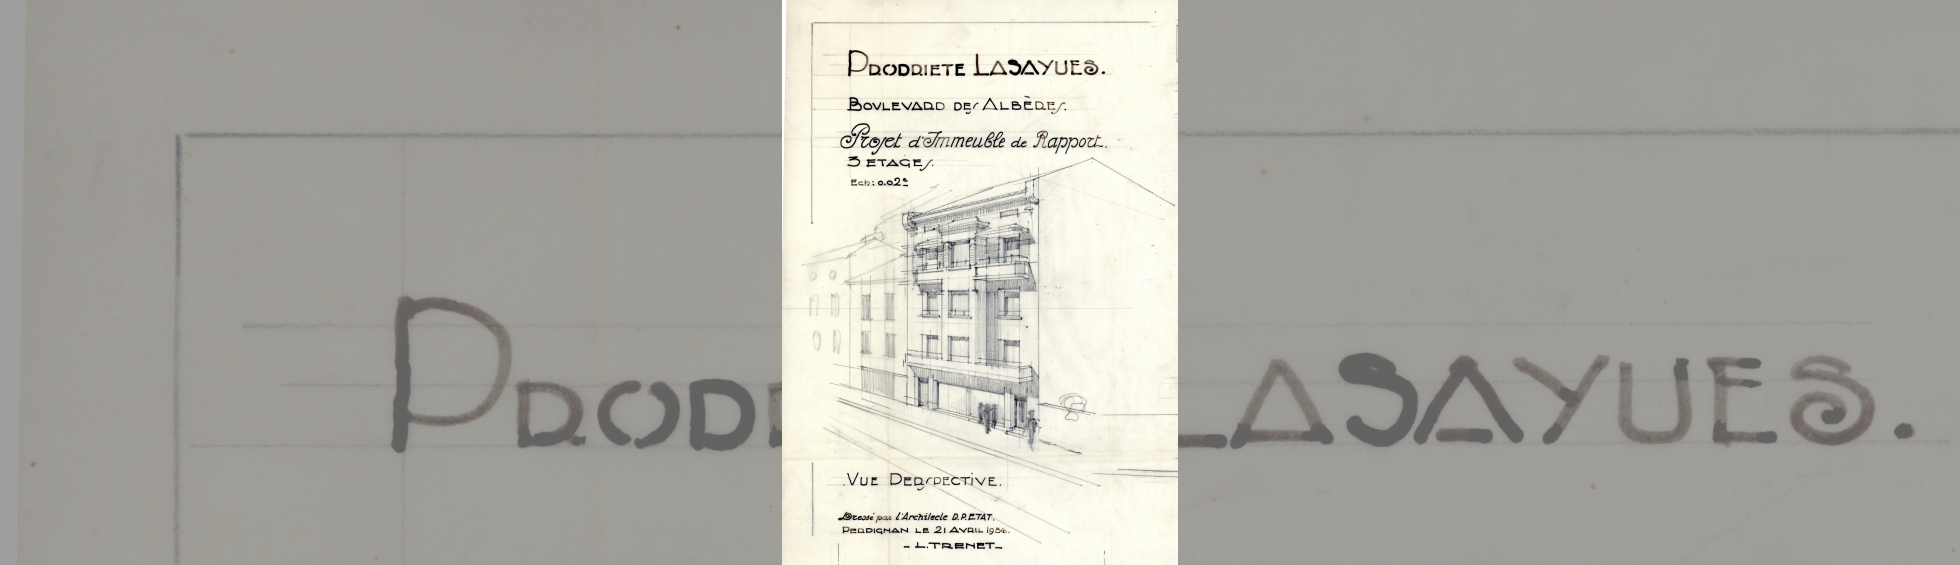 Immeuble de rapport Lasaygues